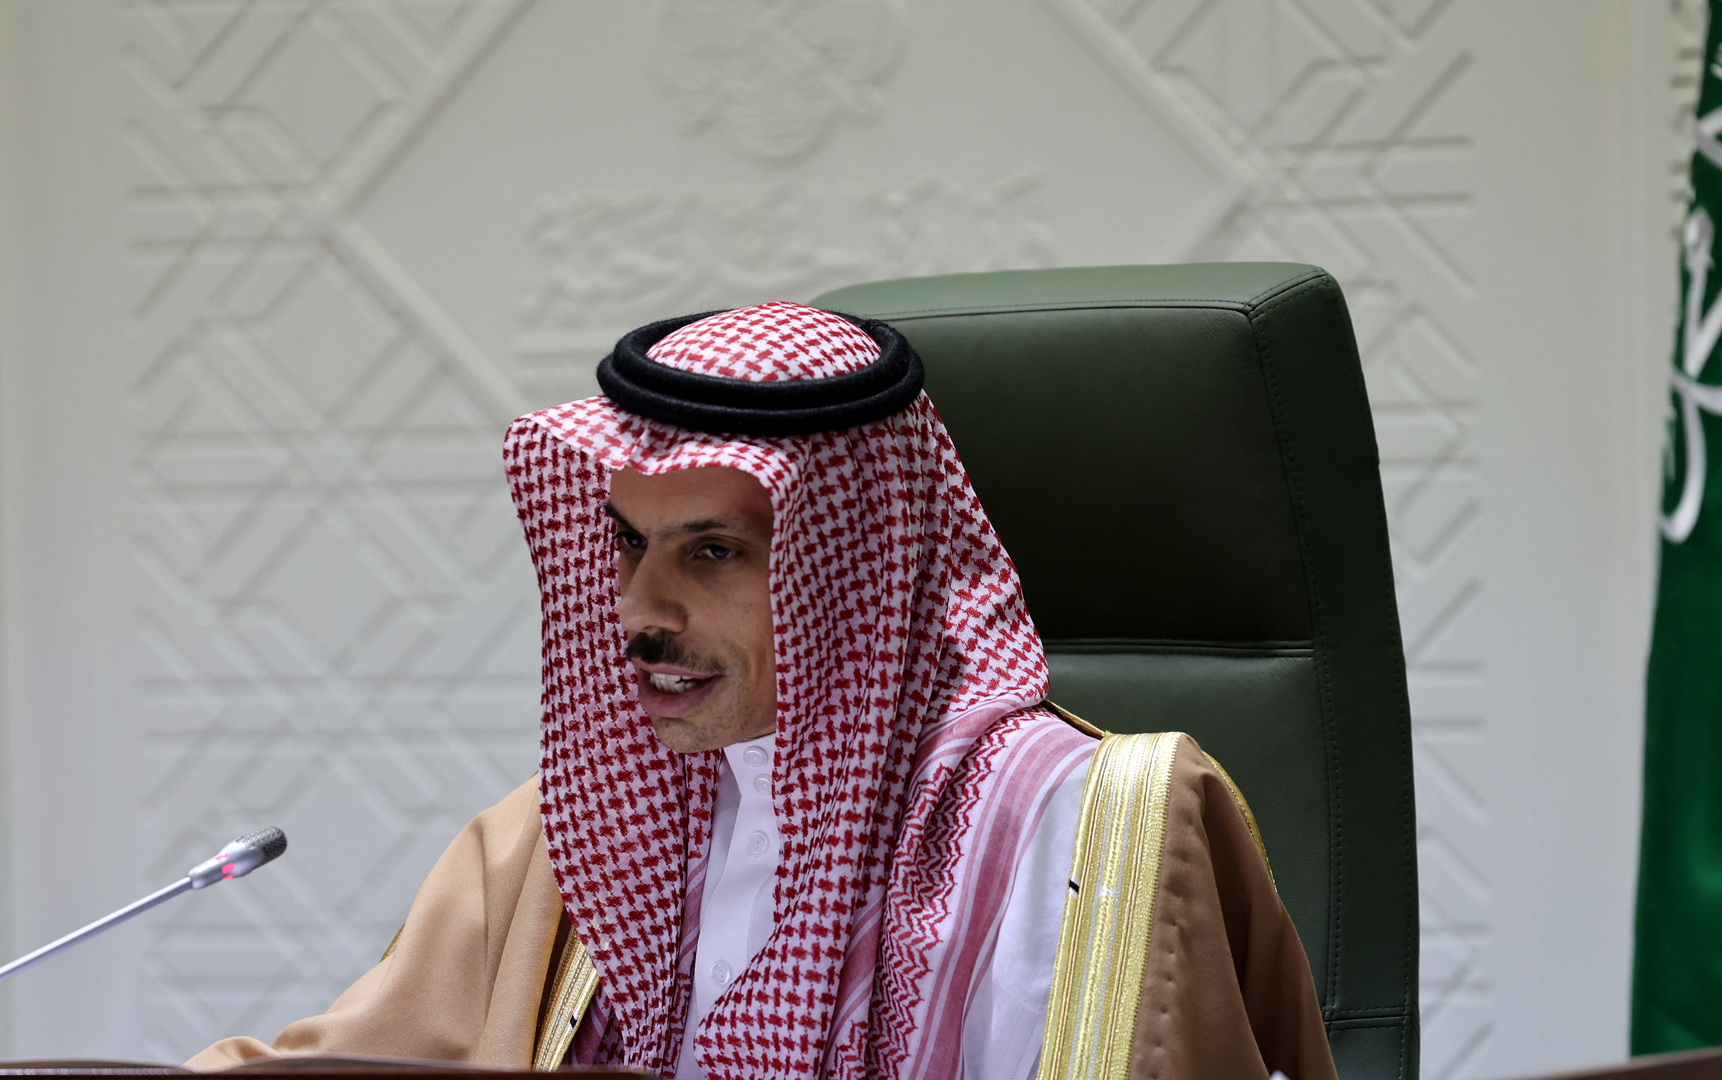 وزير الخارجية السعودي: موقفنا واضح من القضية الفلسطينية وهو استقرار وأمن الفلسطينيين